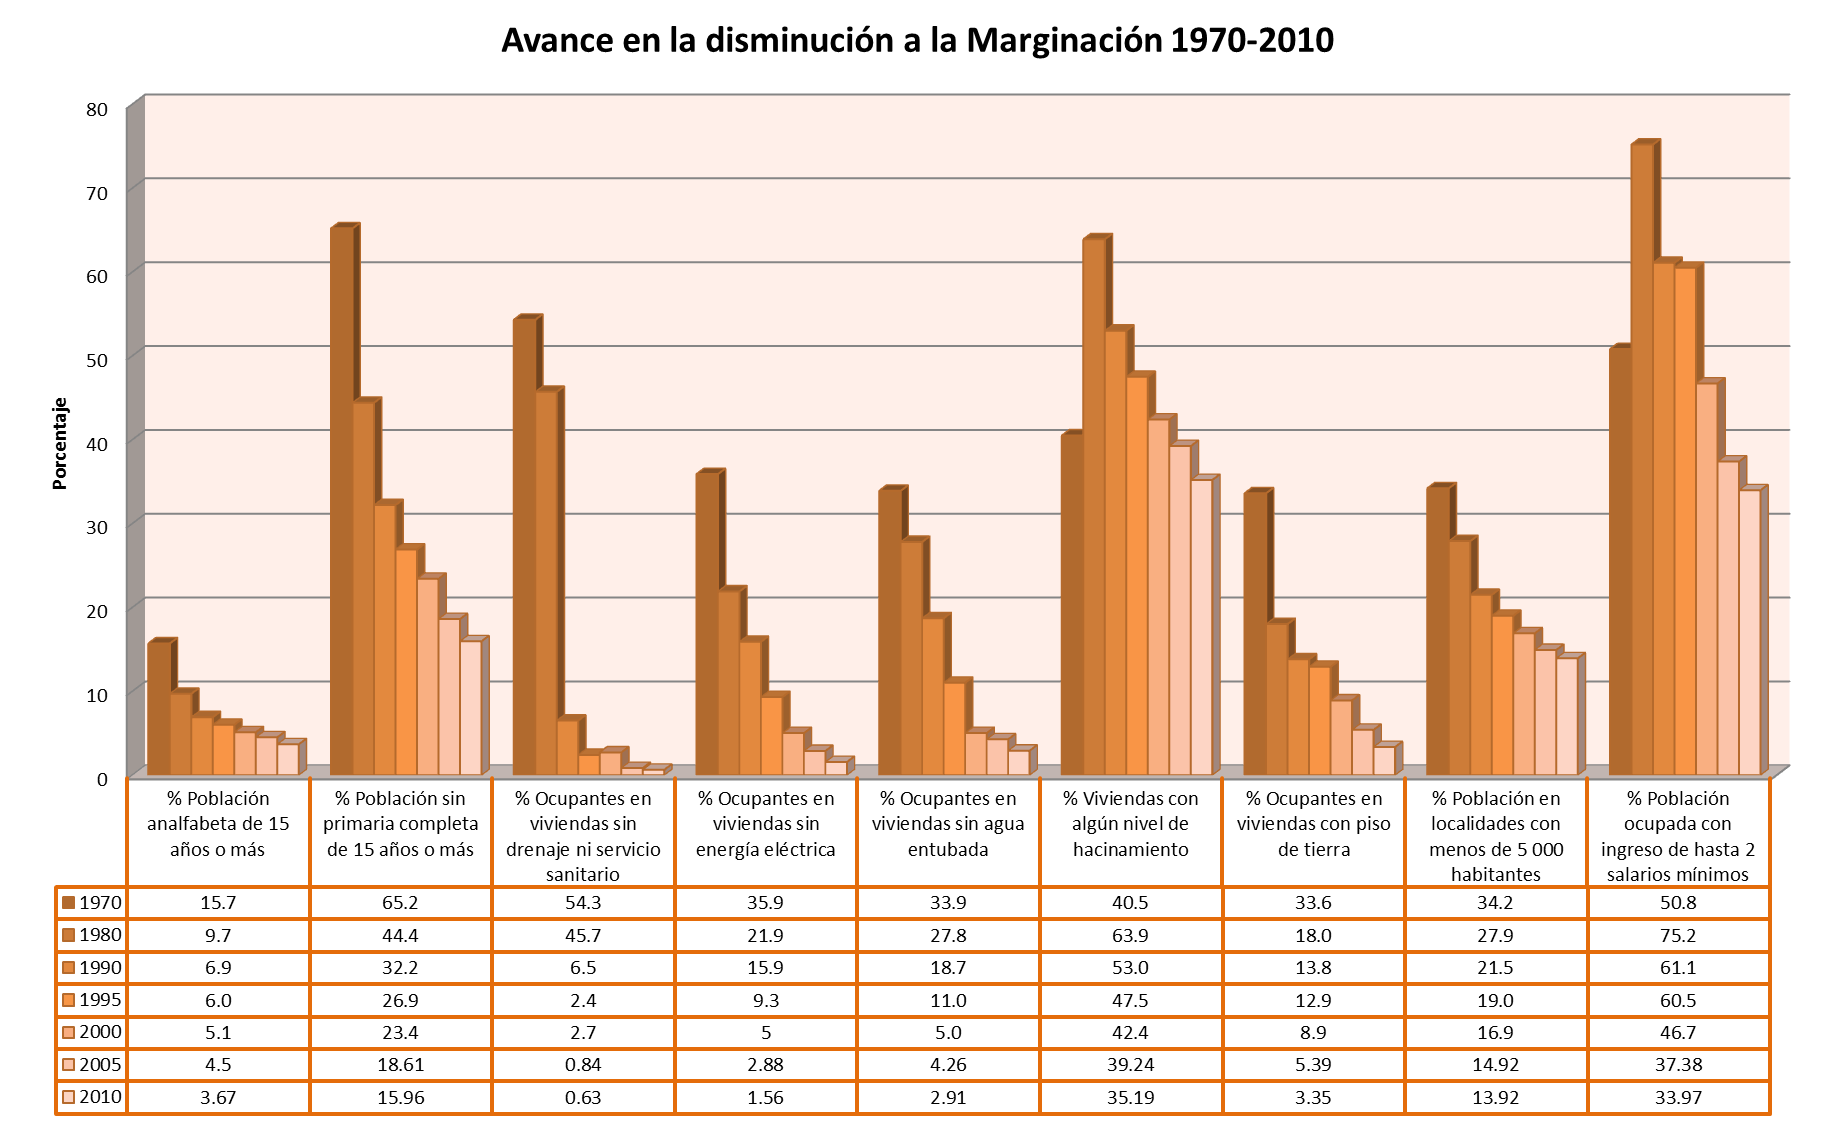 Tamaulipas presenta una disminución sostenida en todos los indicadores de marginación desde las década de los 70 hasta el 2010 como se muestra a continuación.